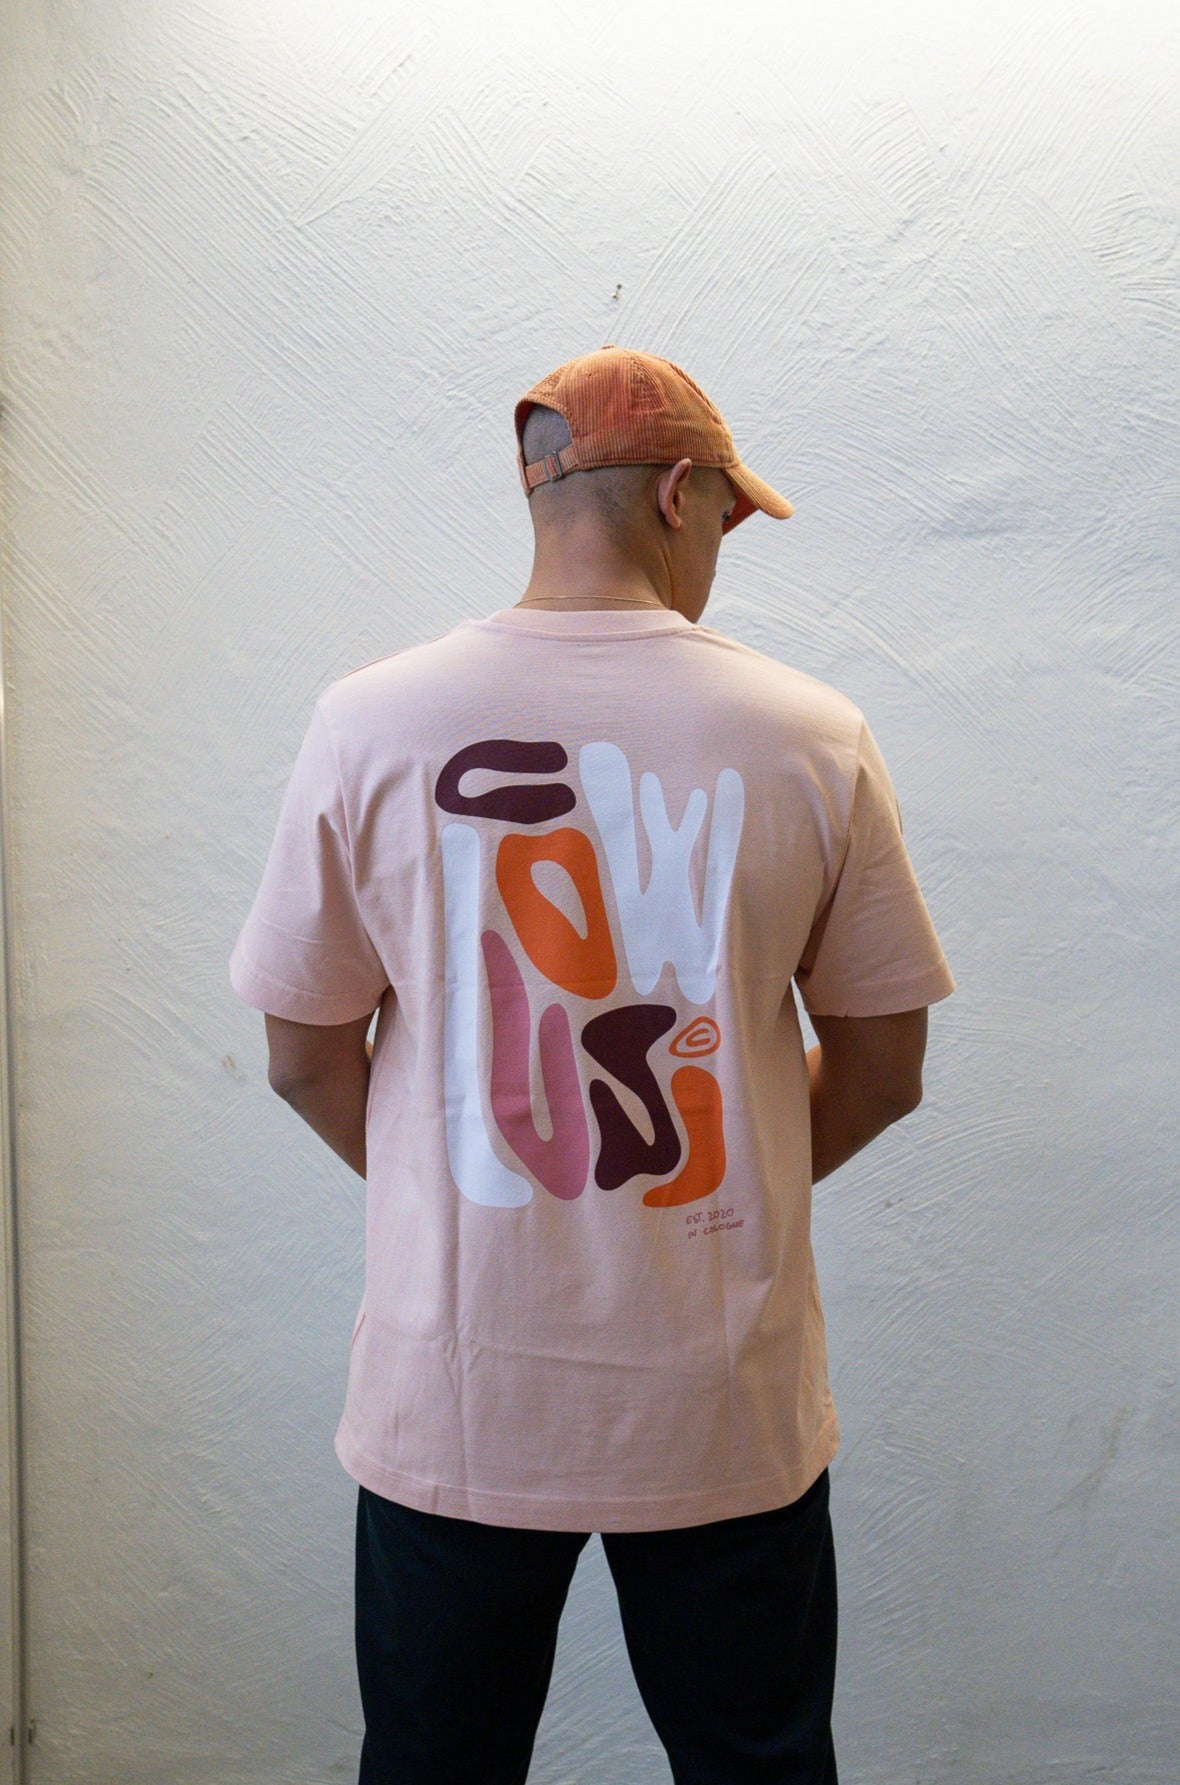 Colors Shirt (Apricot)